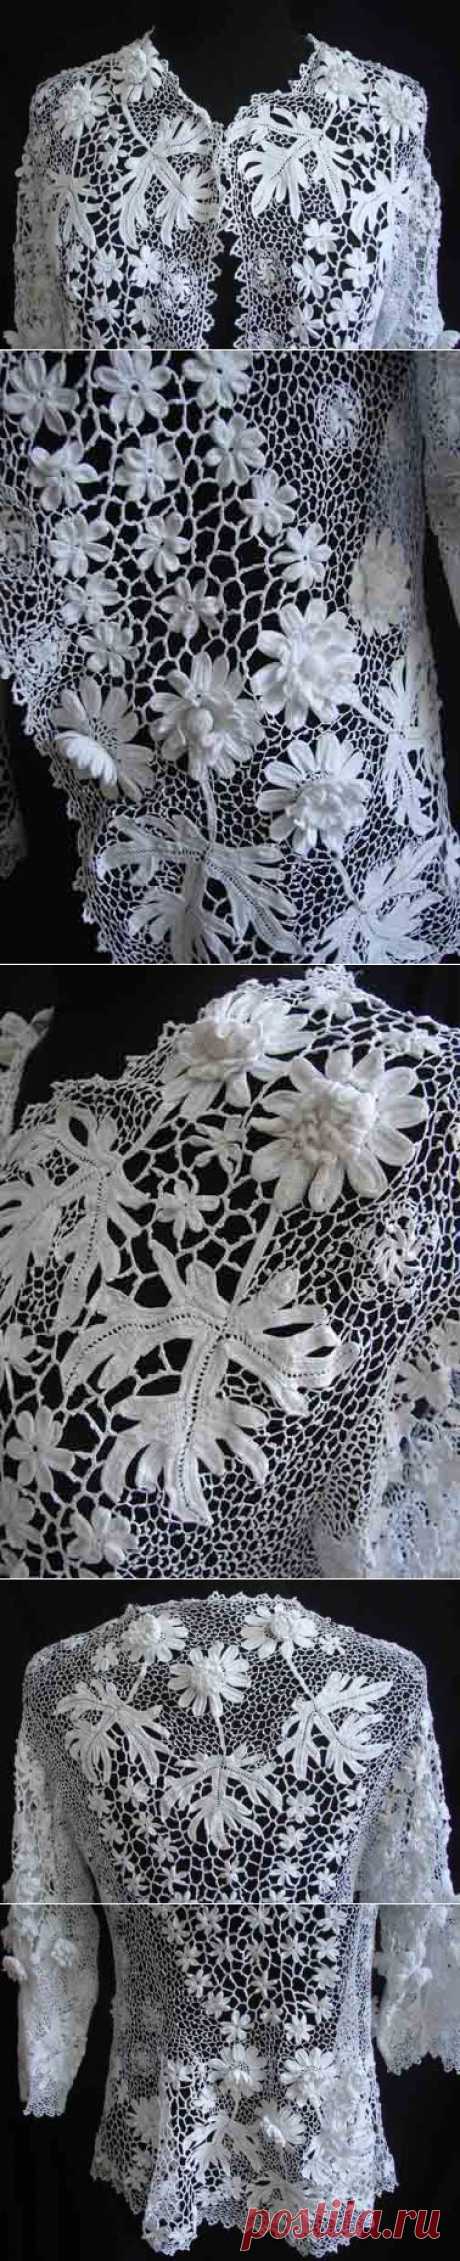 Maria Niforos - Fine Antique Lace, Linens &amp; Textiles : Antique &amp; Vintage Clothing # CL-30 Exquisite Irish Crochet Jacket